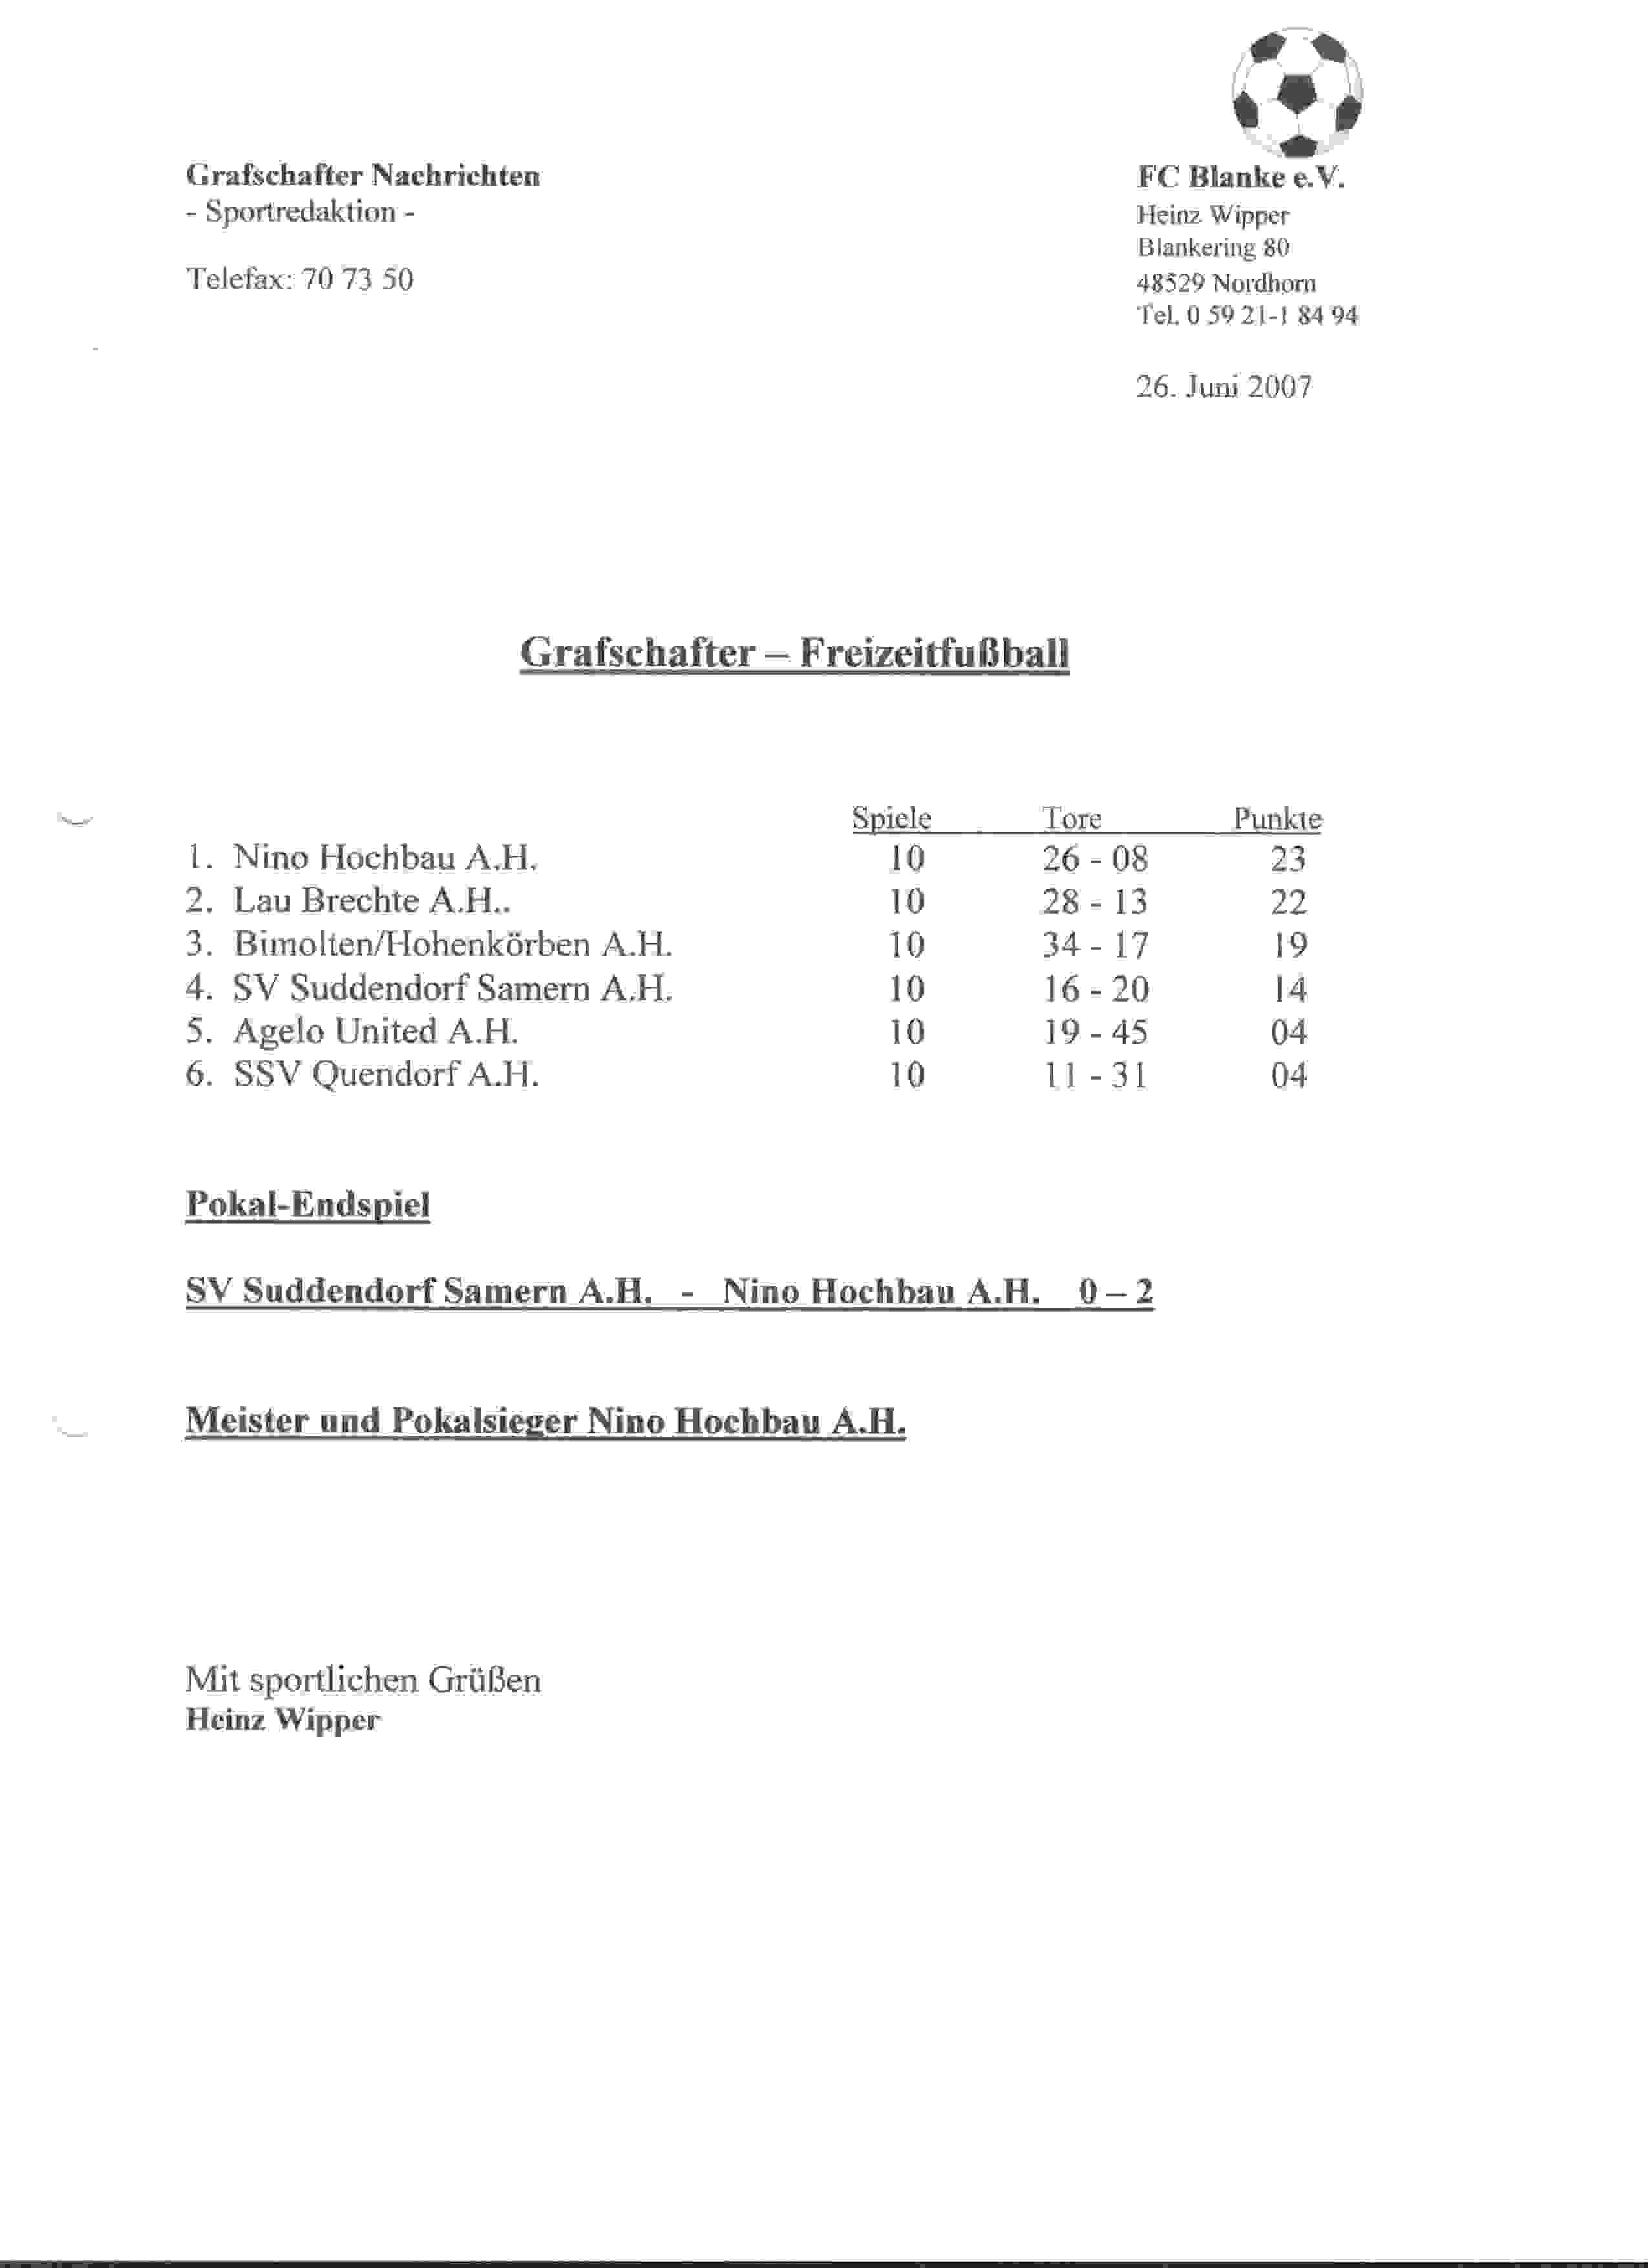 Eindstand Grafschafter Freizeit Fuβball Liga seizoen 2006/2007